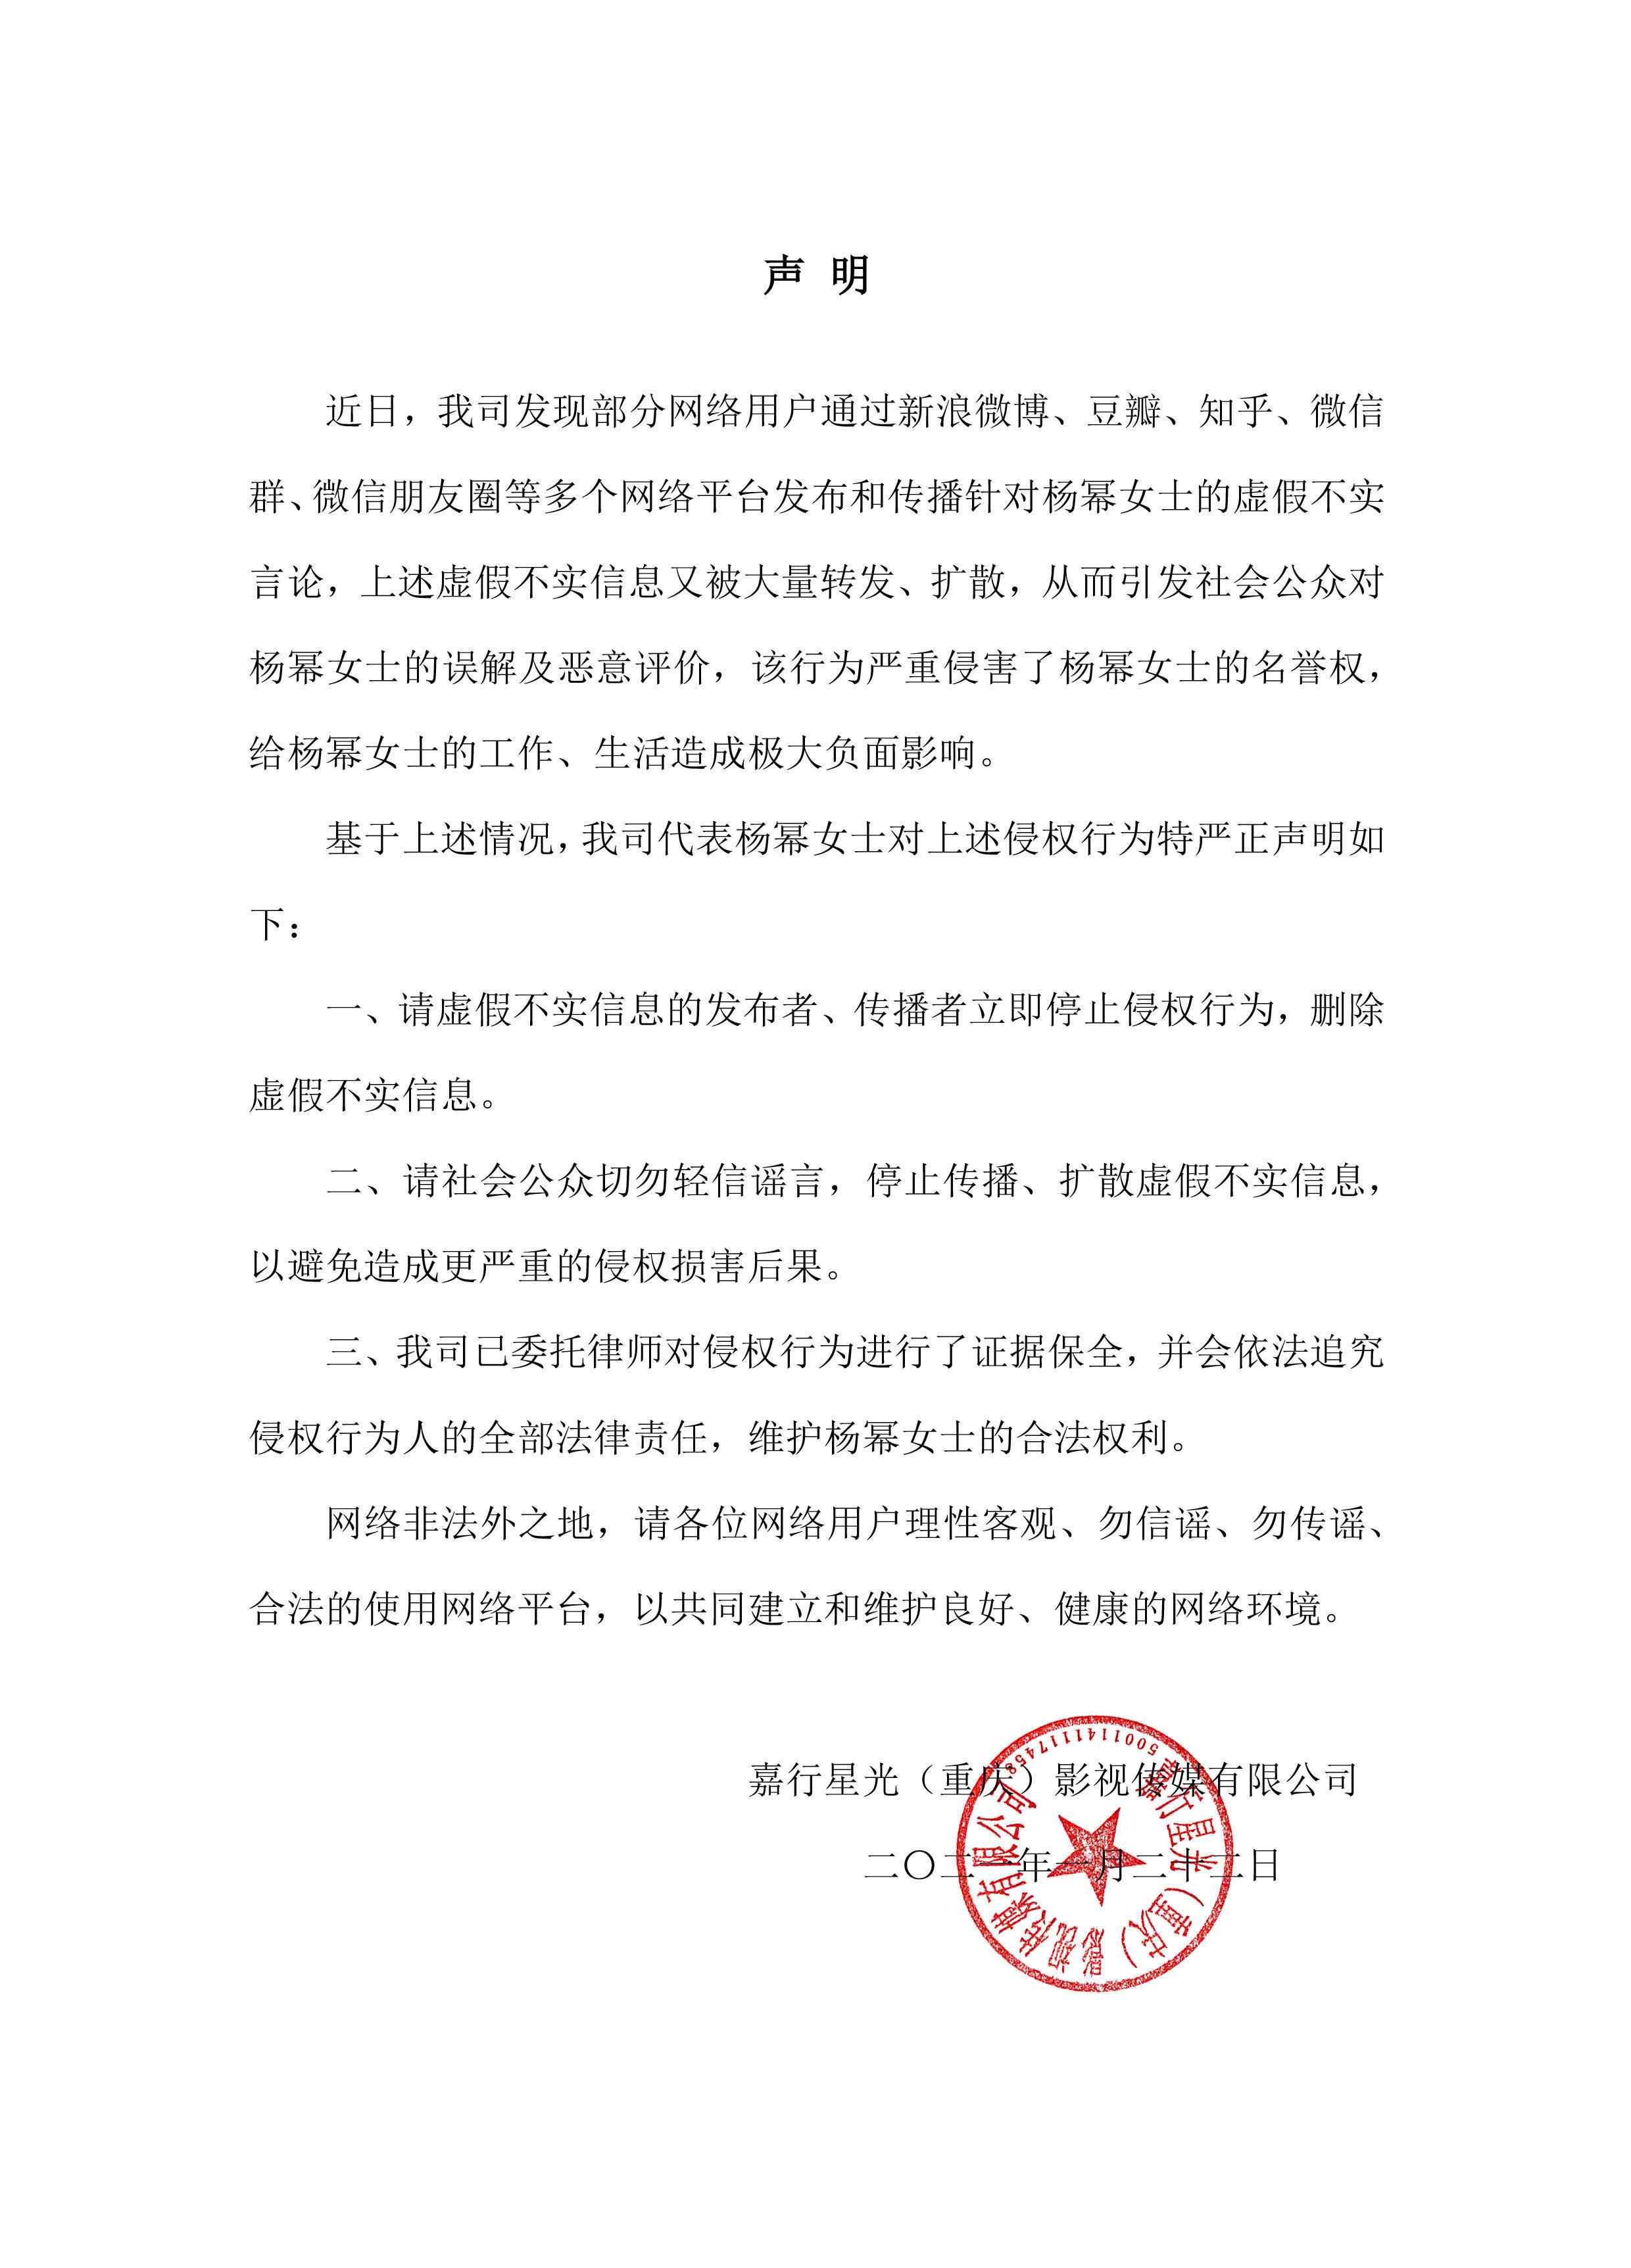 杨幂工作室声明 杨幂工作室发布辟谣声明，呼吁合法使用网络平台